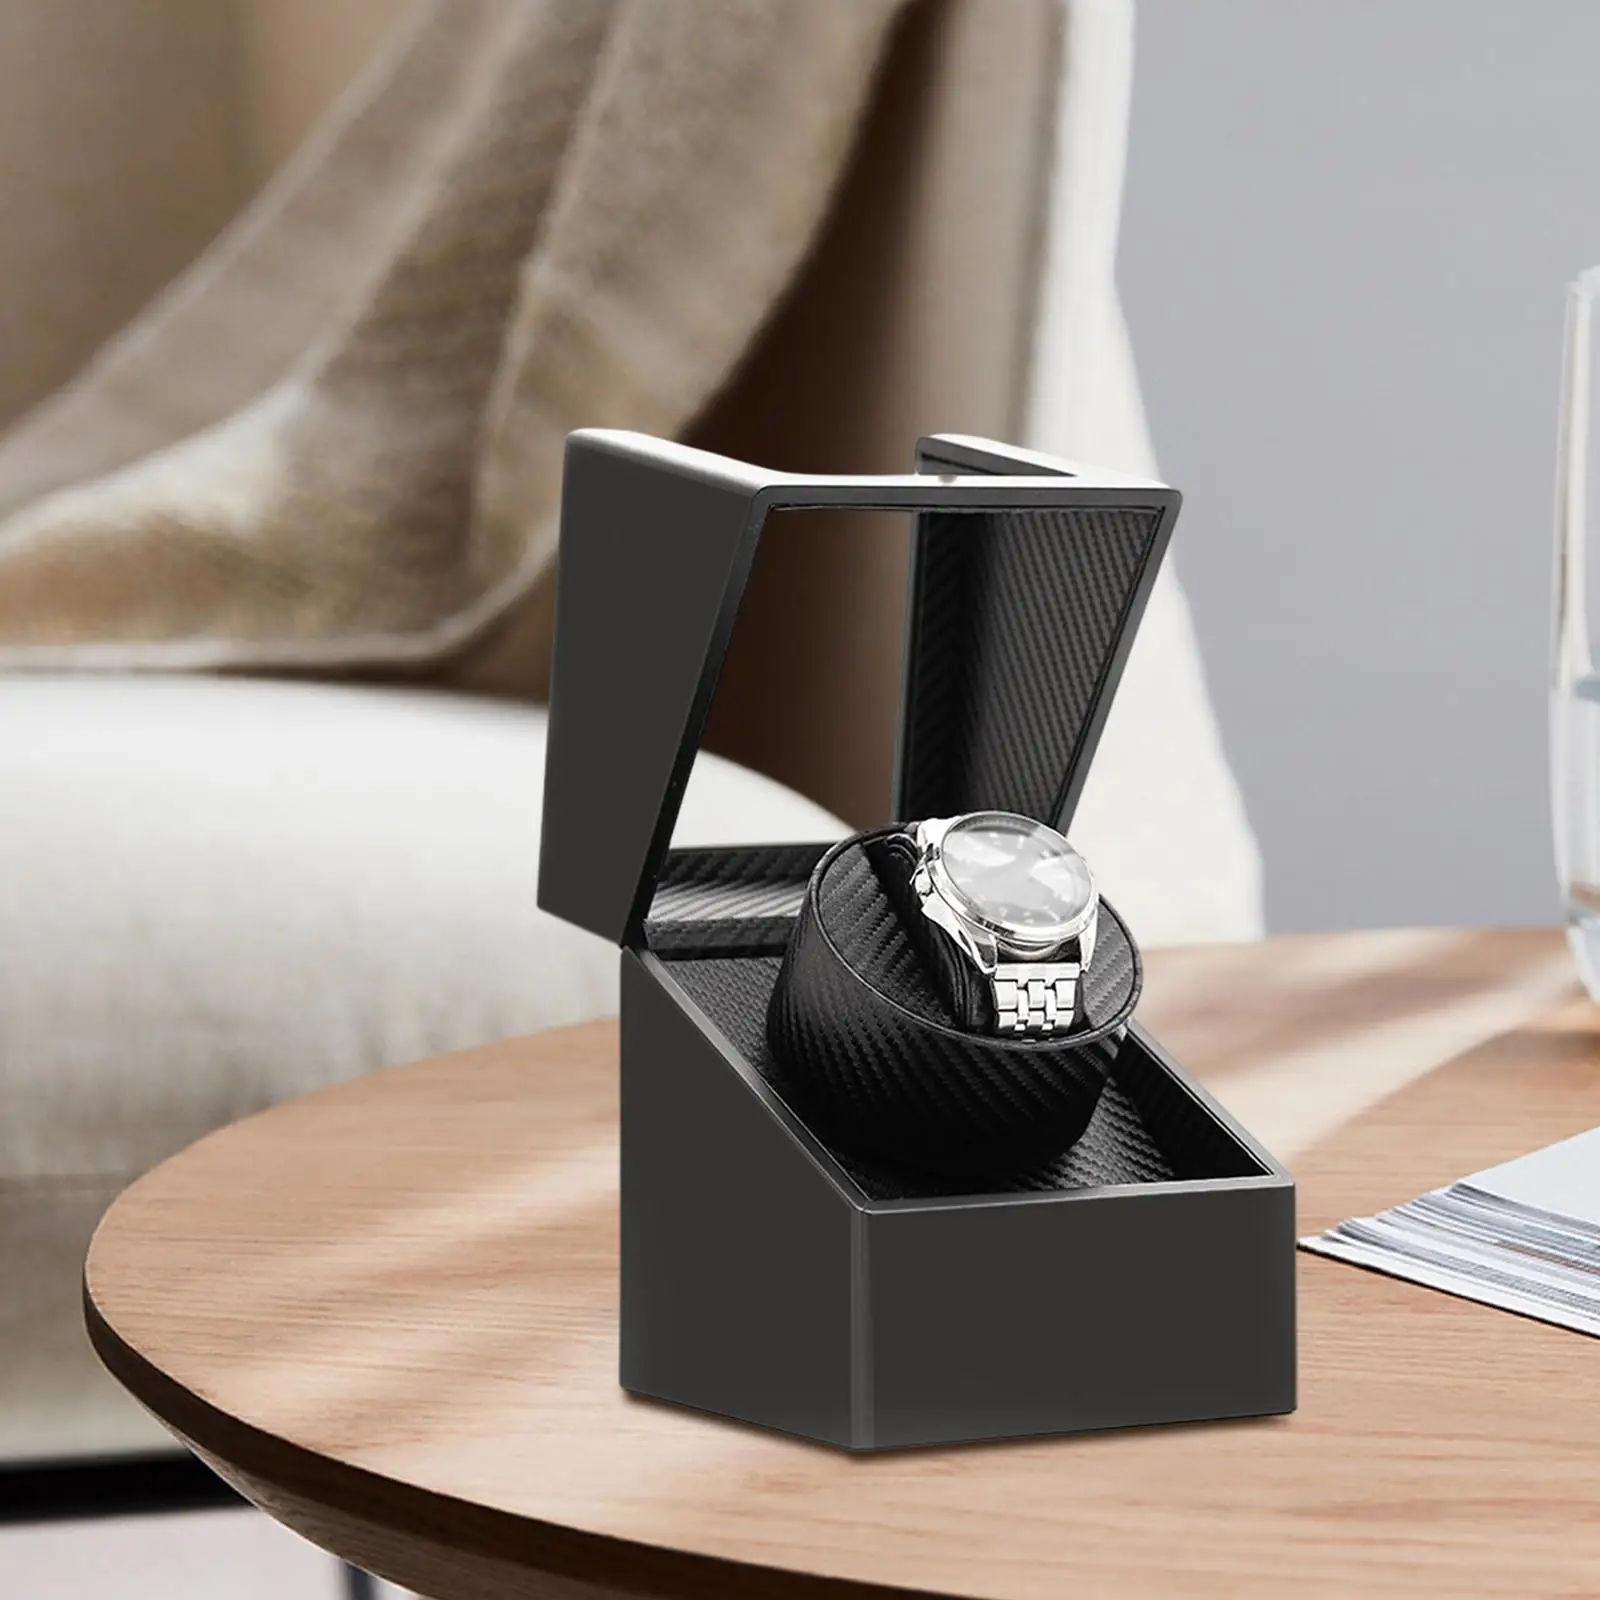 Automatic Single Watch Winder Flexible s Winding Collectors Quiet Running Motors Luxury Display for Women/Men Watches